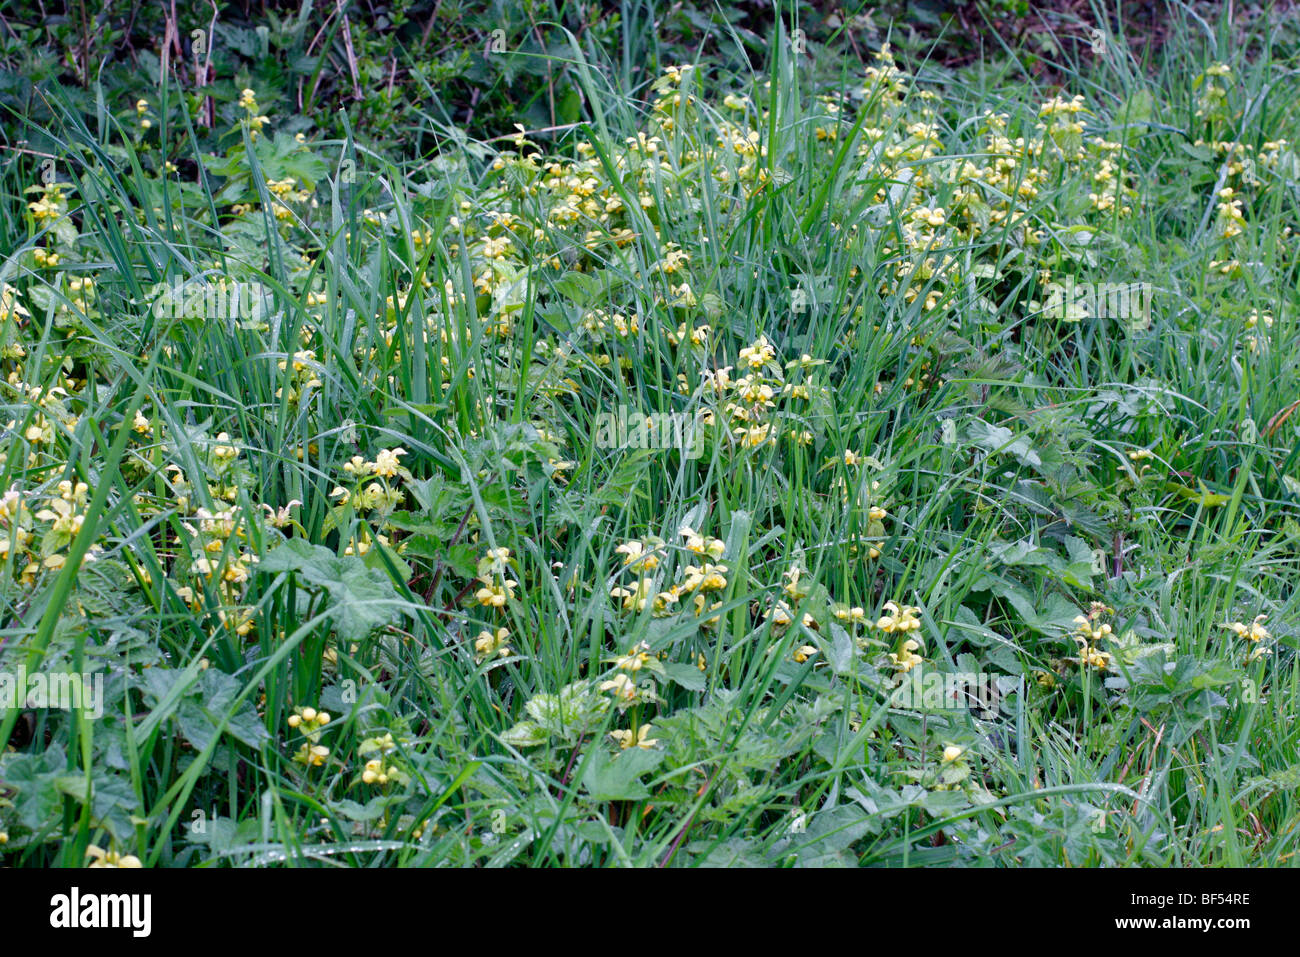 Lamium galeobdolon 'Variegatum' syn Lamium galeobdolon subsp montanum 'Florentinum' Yellow Archangel Stock Photo